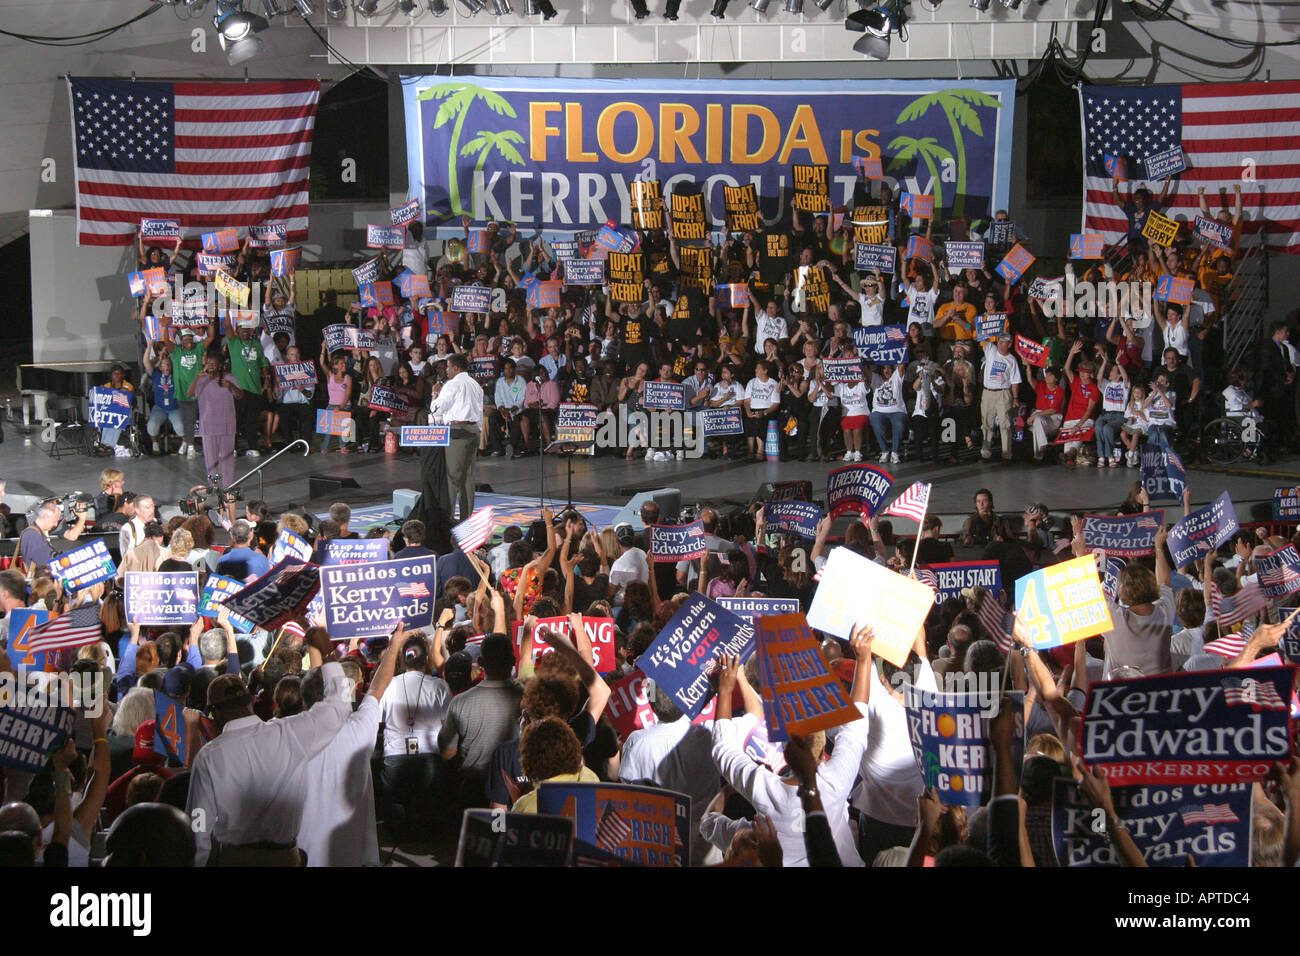 Miami Florida, Bayfront Park, Biscayne Boulevard, Präsidentschaftswahlveranstaltung der Demokratischen Partei, politische Politik, Regierung, Anhänger von Kerry Edwards, sta Stockfoto